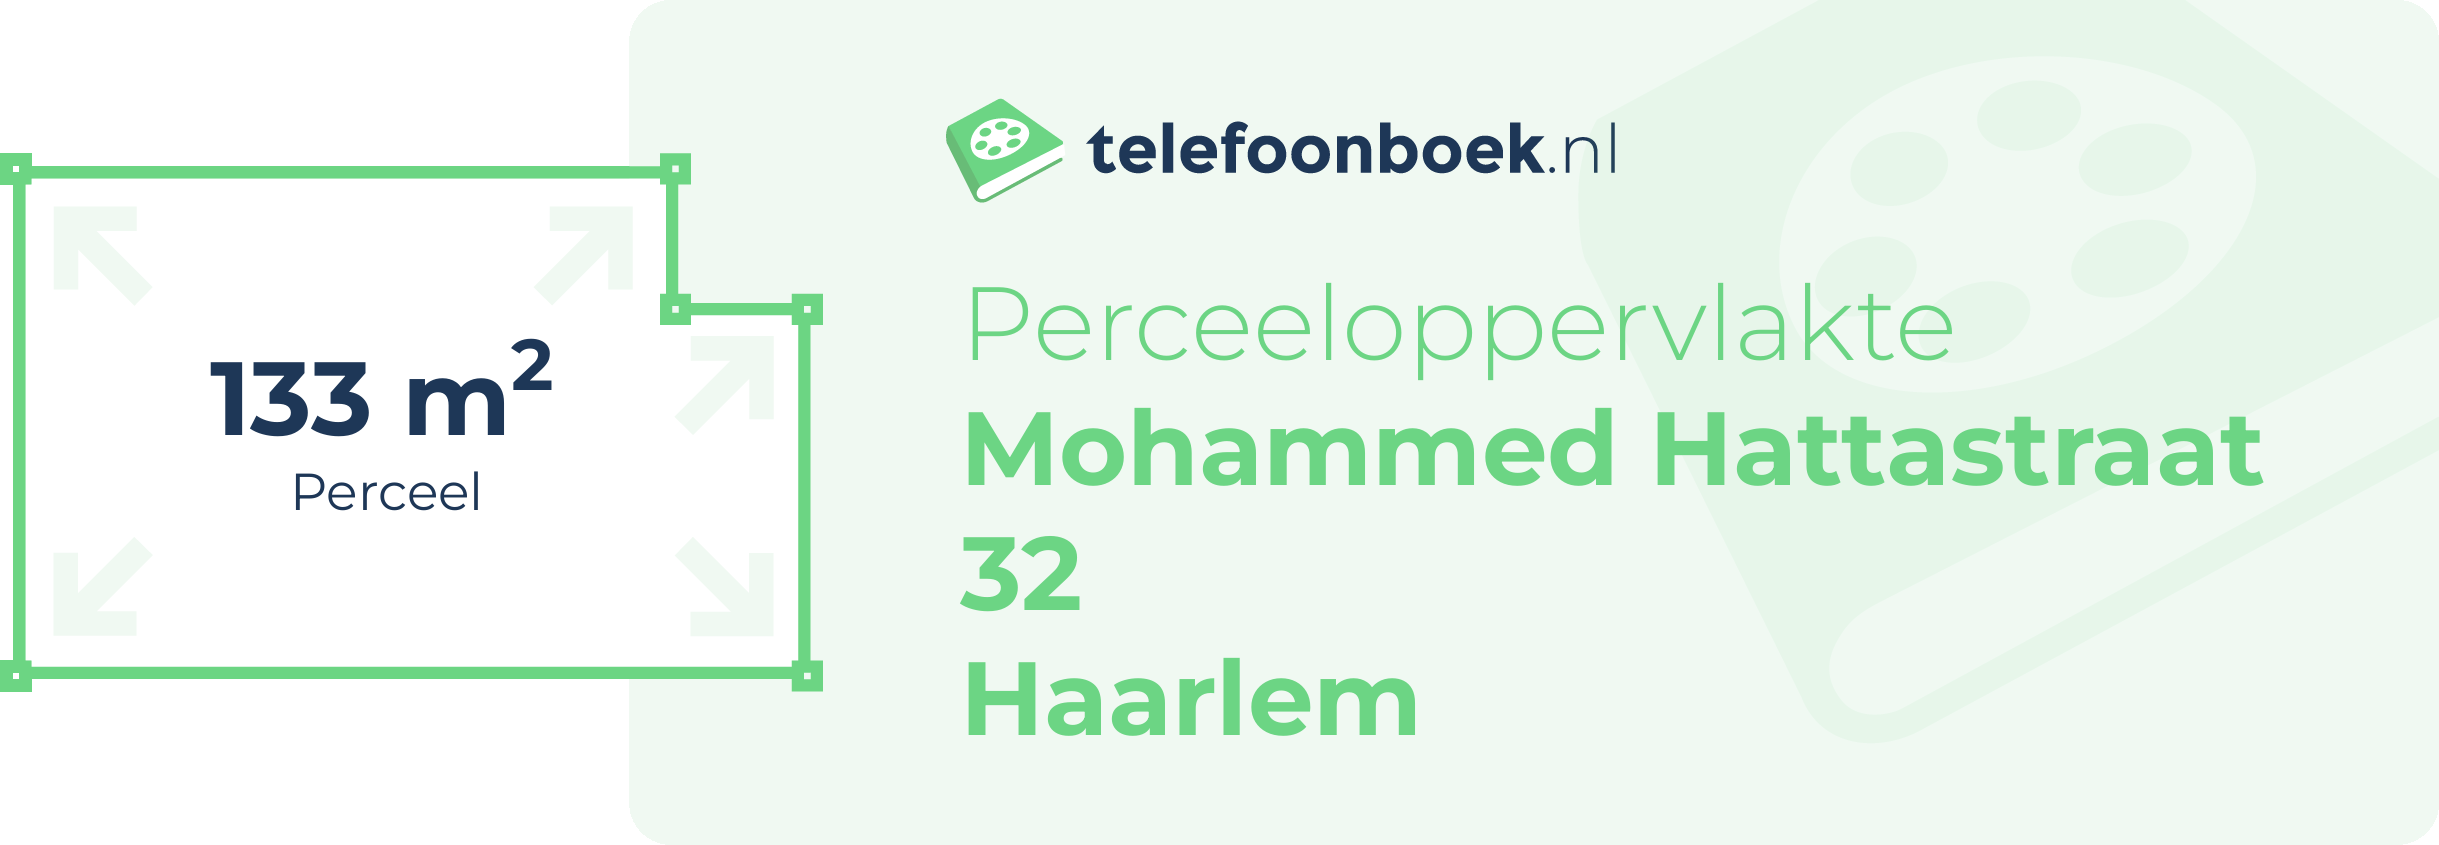 Perceeloppervlakte Mohammed Hattastraat 32 Haarlem